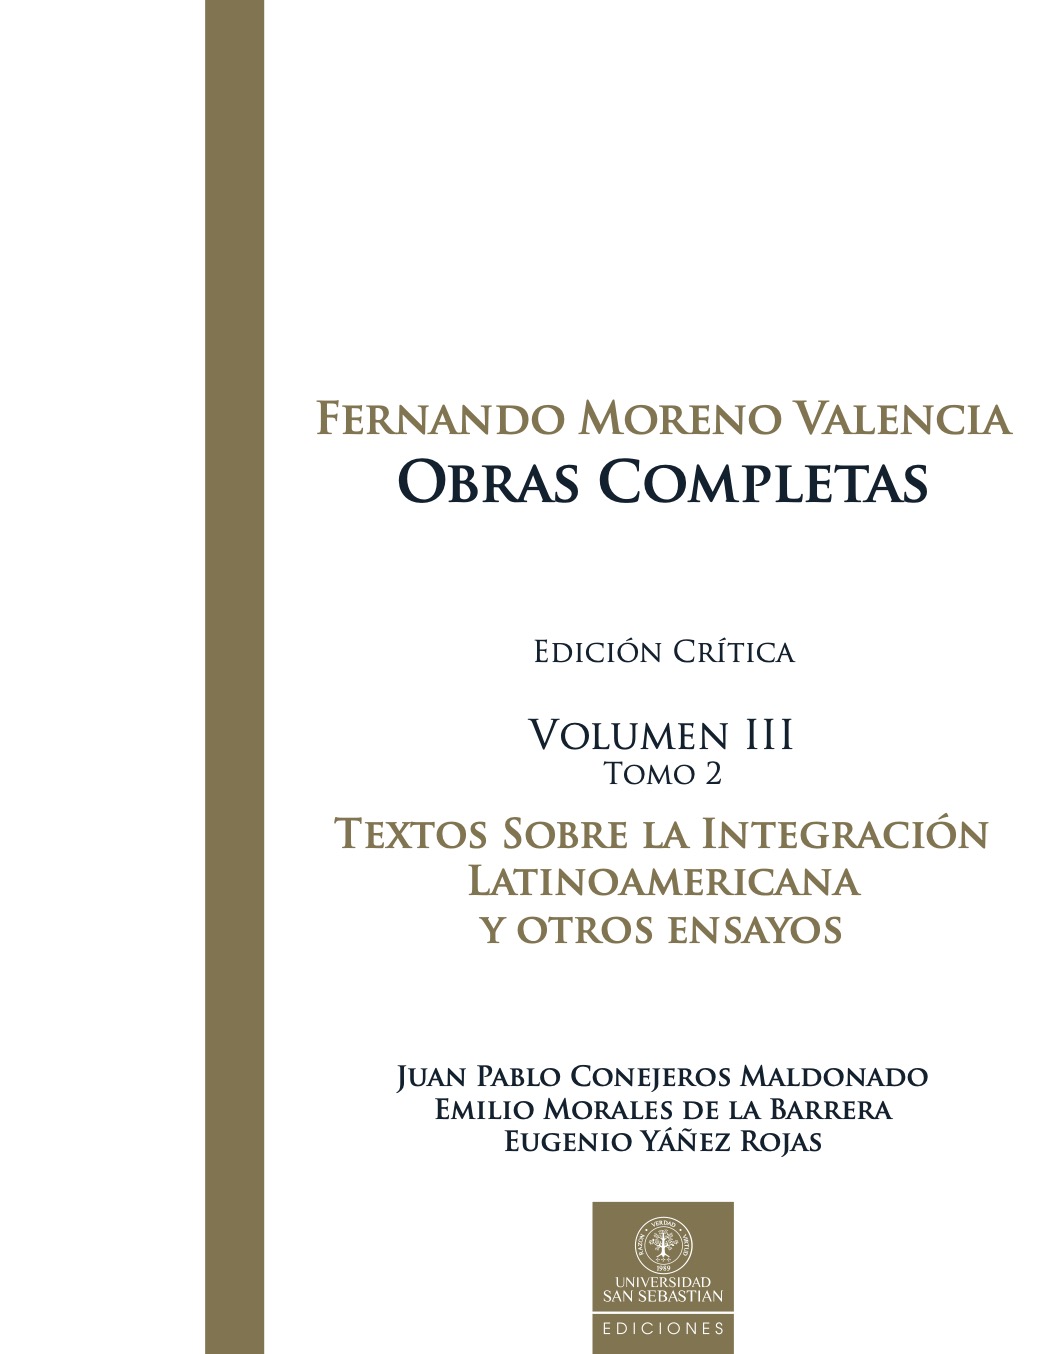 Fernando Moreno Valencia-Obras completas-Volumen III-Tomo 2